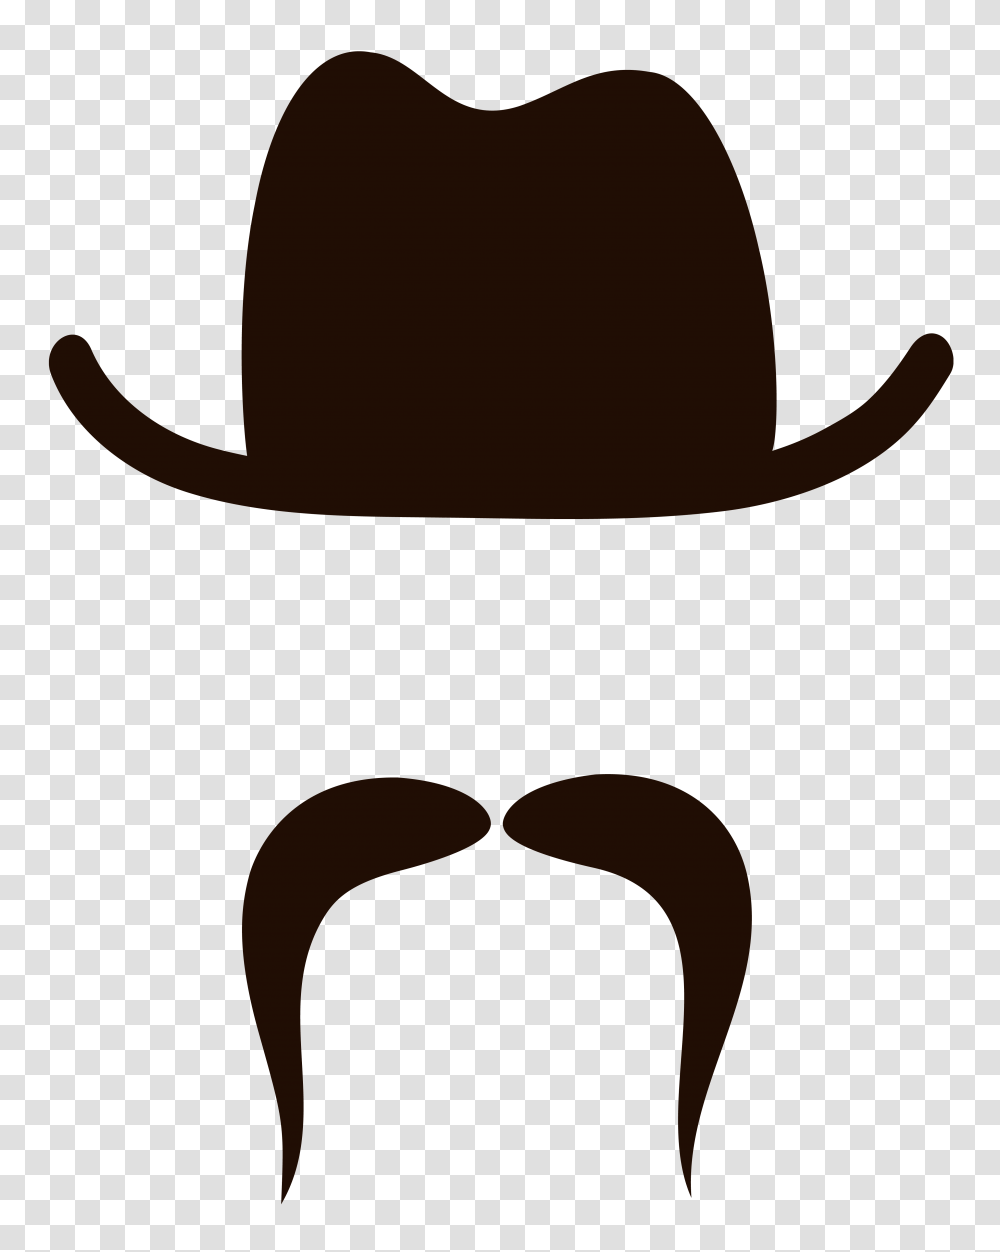 Movember Handlebar Moustache Clip Art, Apparel, Cowboy Hat, Baseball Cap Transparent Png